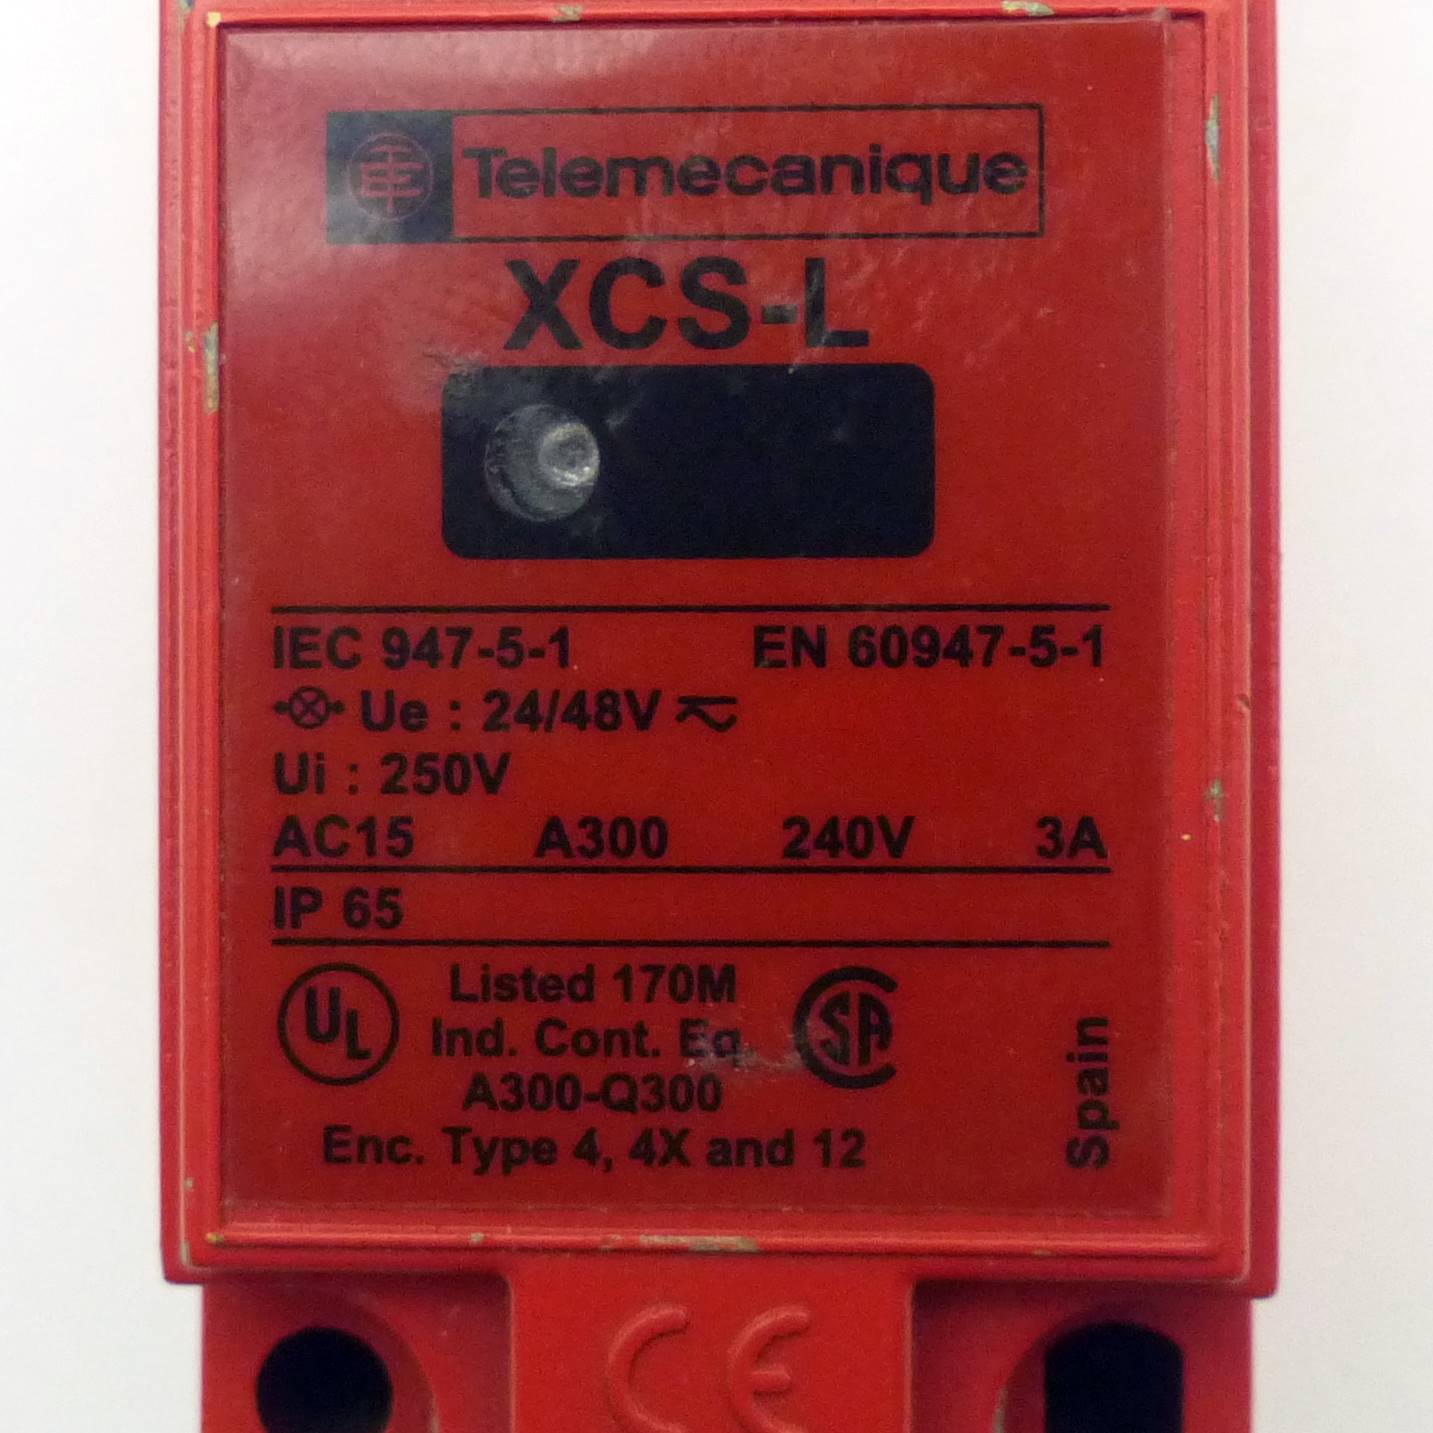 Sicherheitsschalter XCSL784B3 